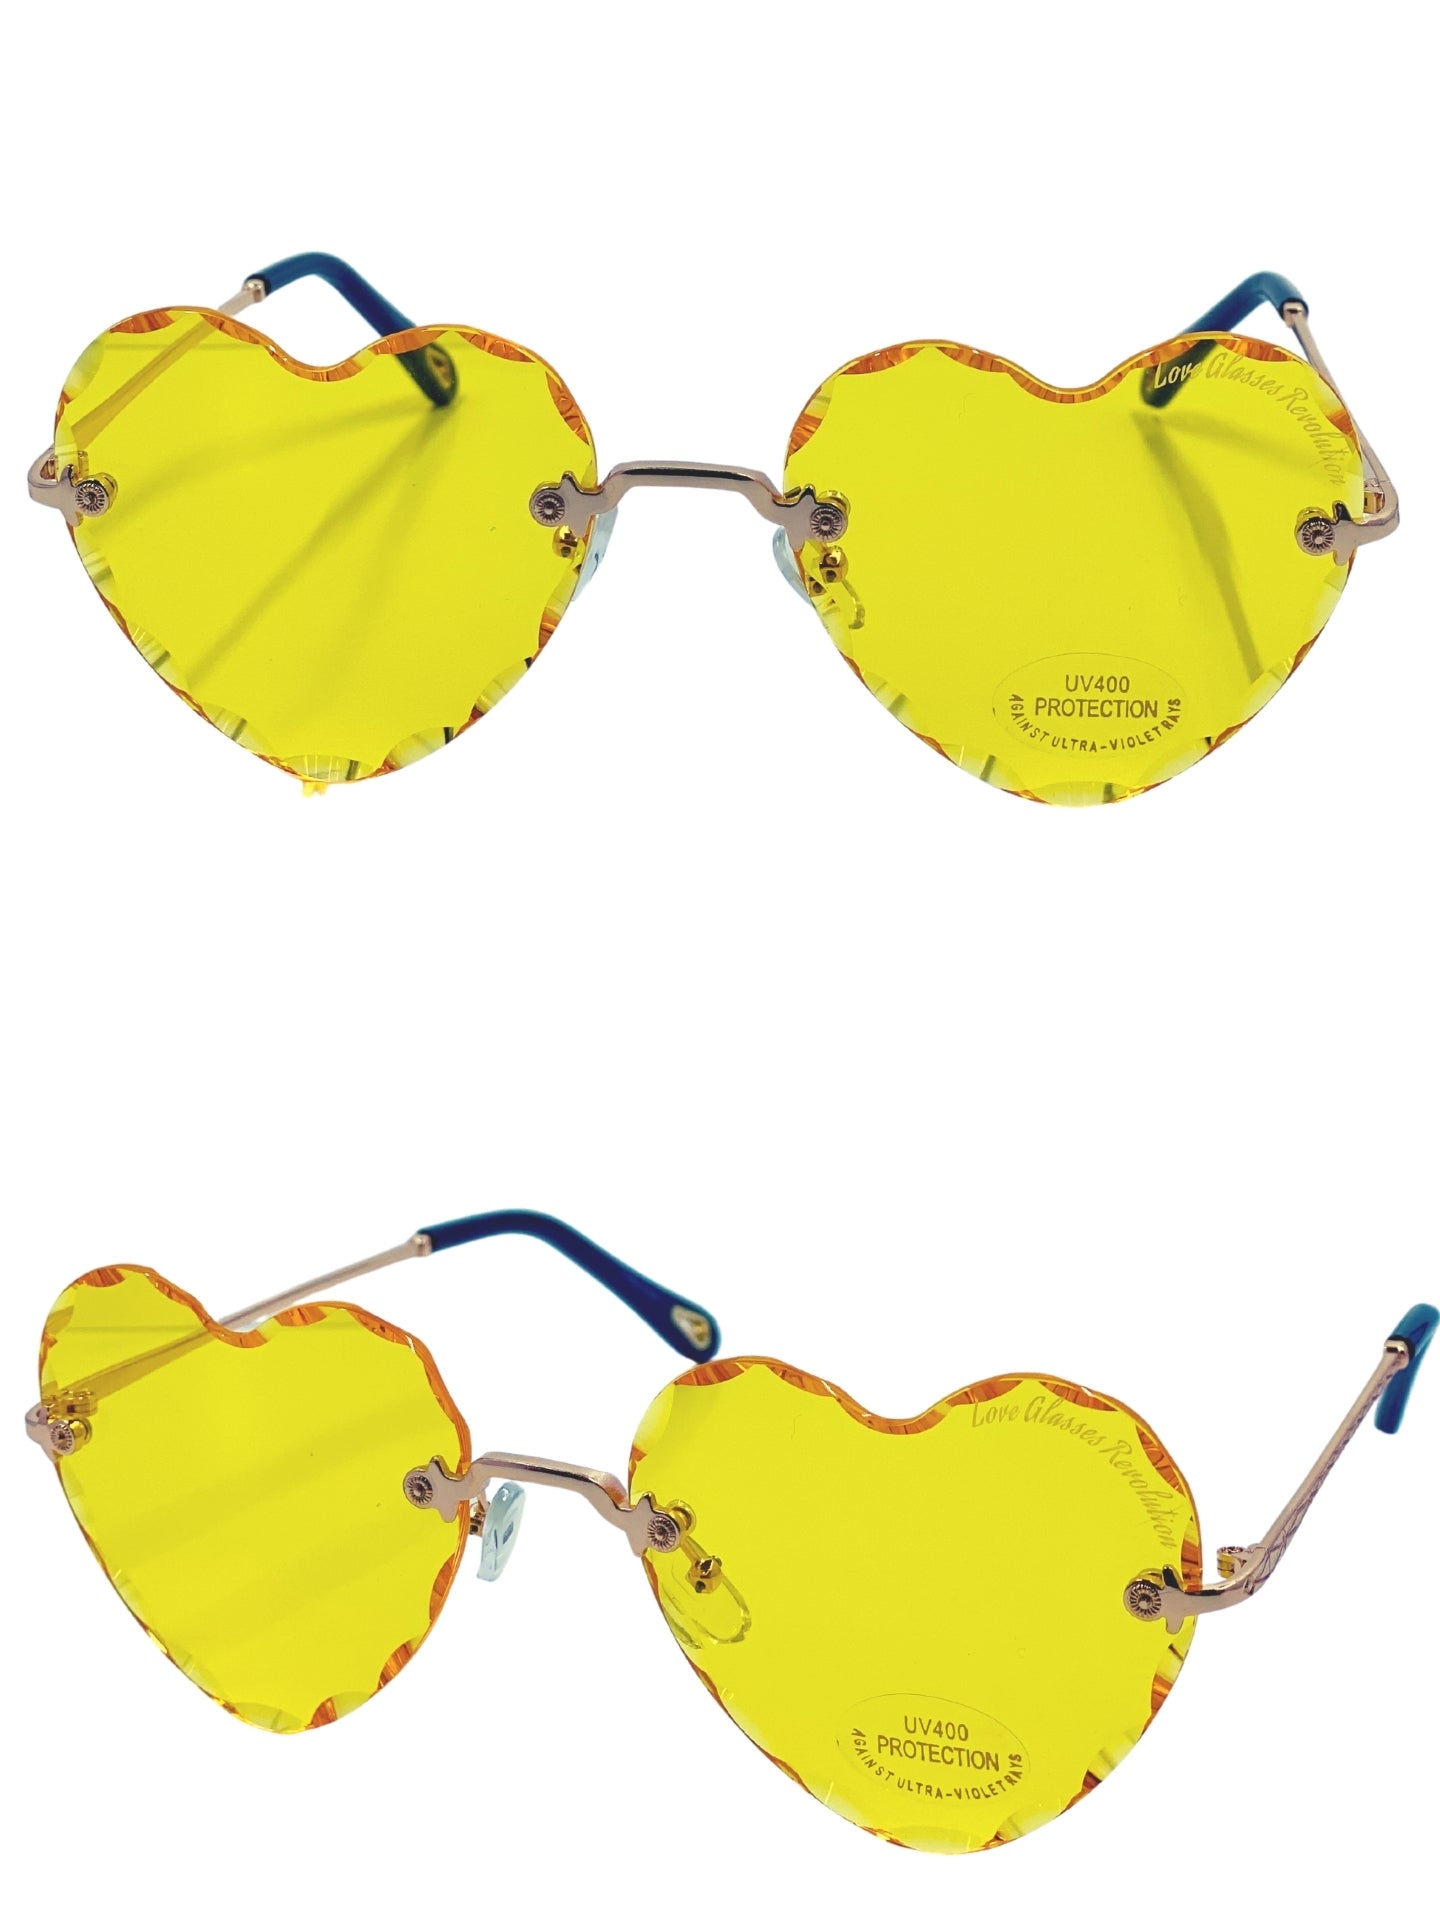 Beveled Frameless - Love Glasses Revolution - Women's Heart Sunglasses